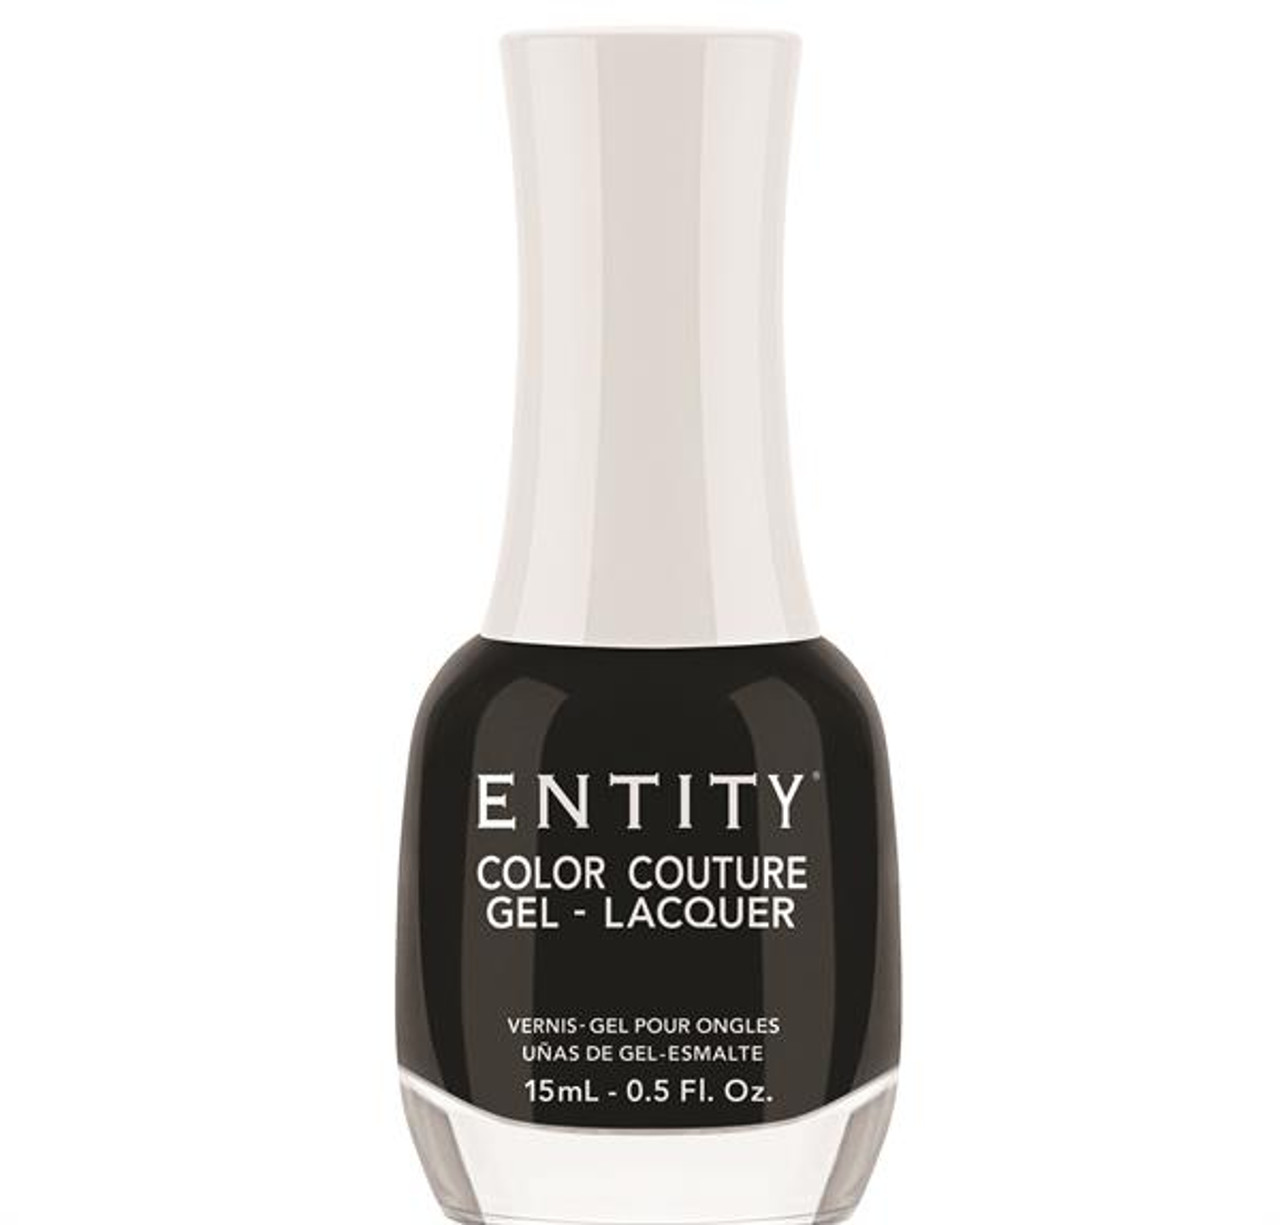 Entity Color Couture Gel-Lacquer LITTLE BLACK BOTTLE - 15 mL / .5 fl oz